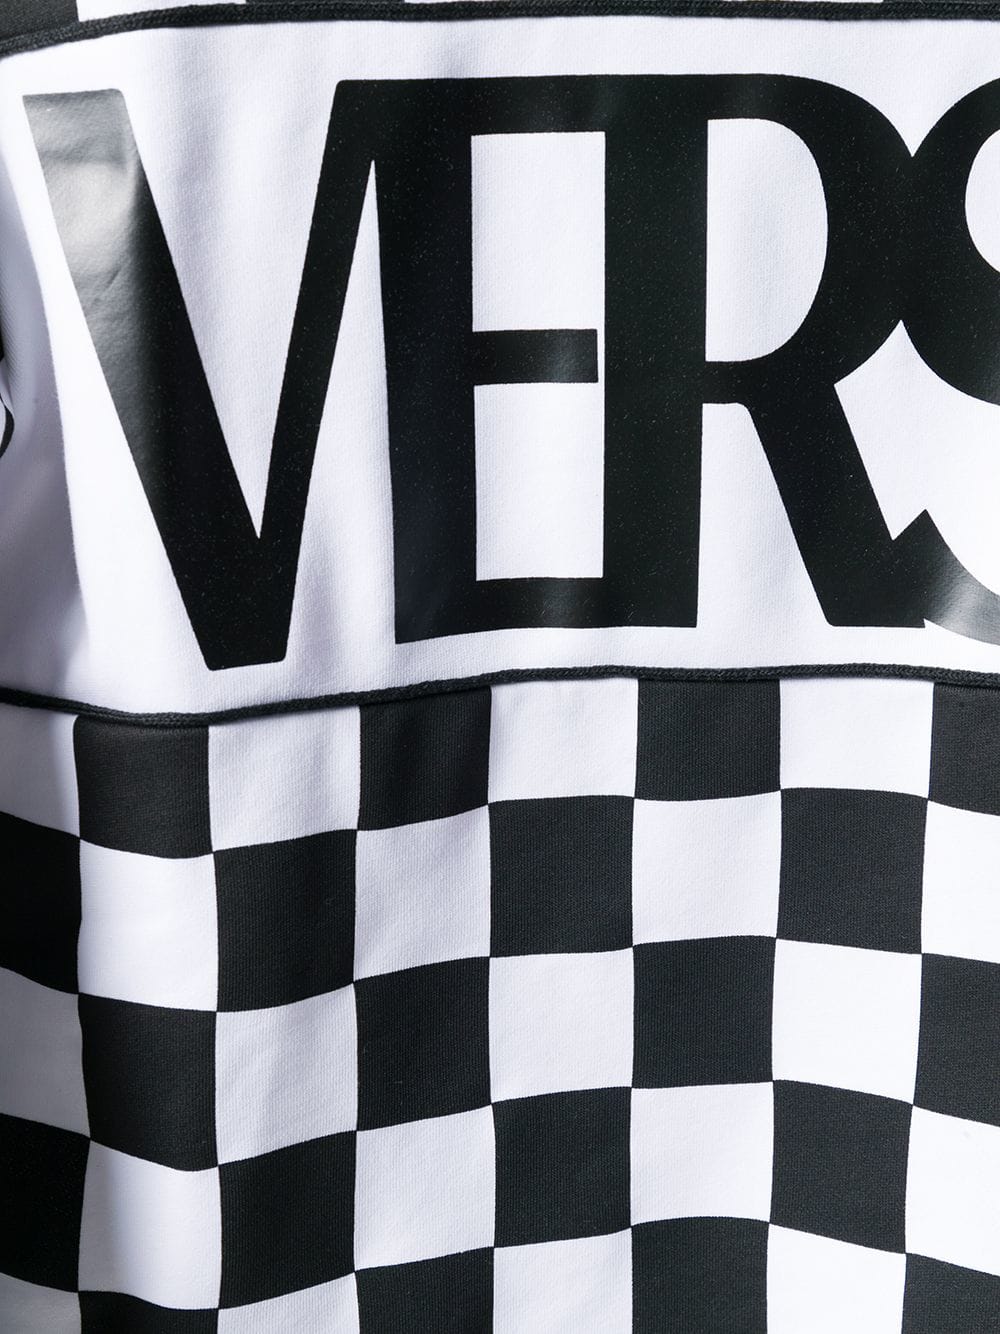 Black and White Checkered Logo - Versus logo checkered sweatshirt B7088 BLACK WHITE luxury HOKOVC